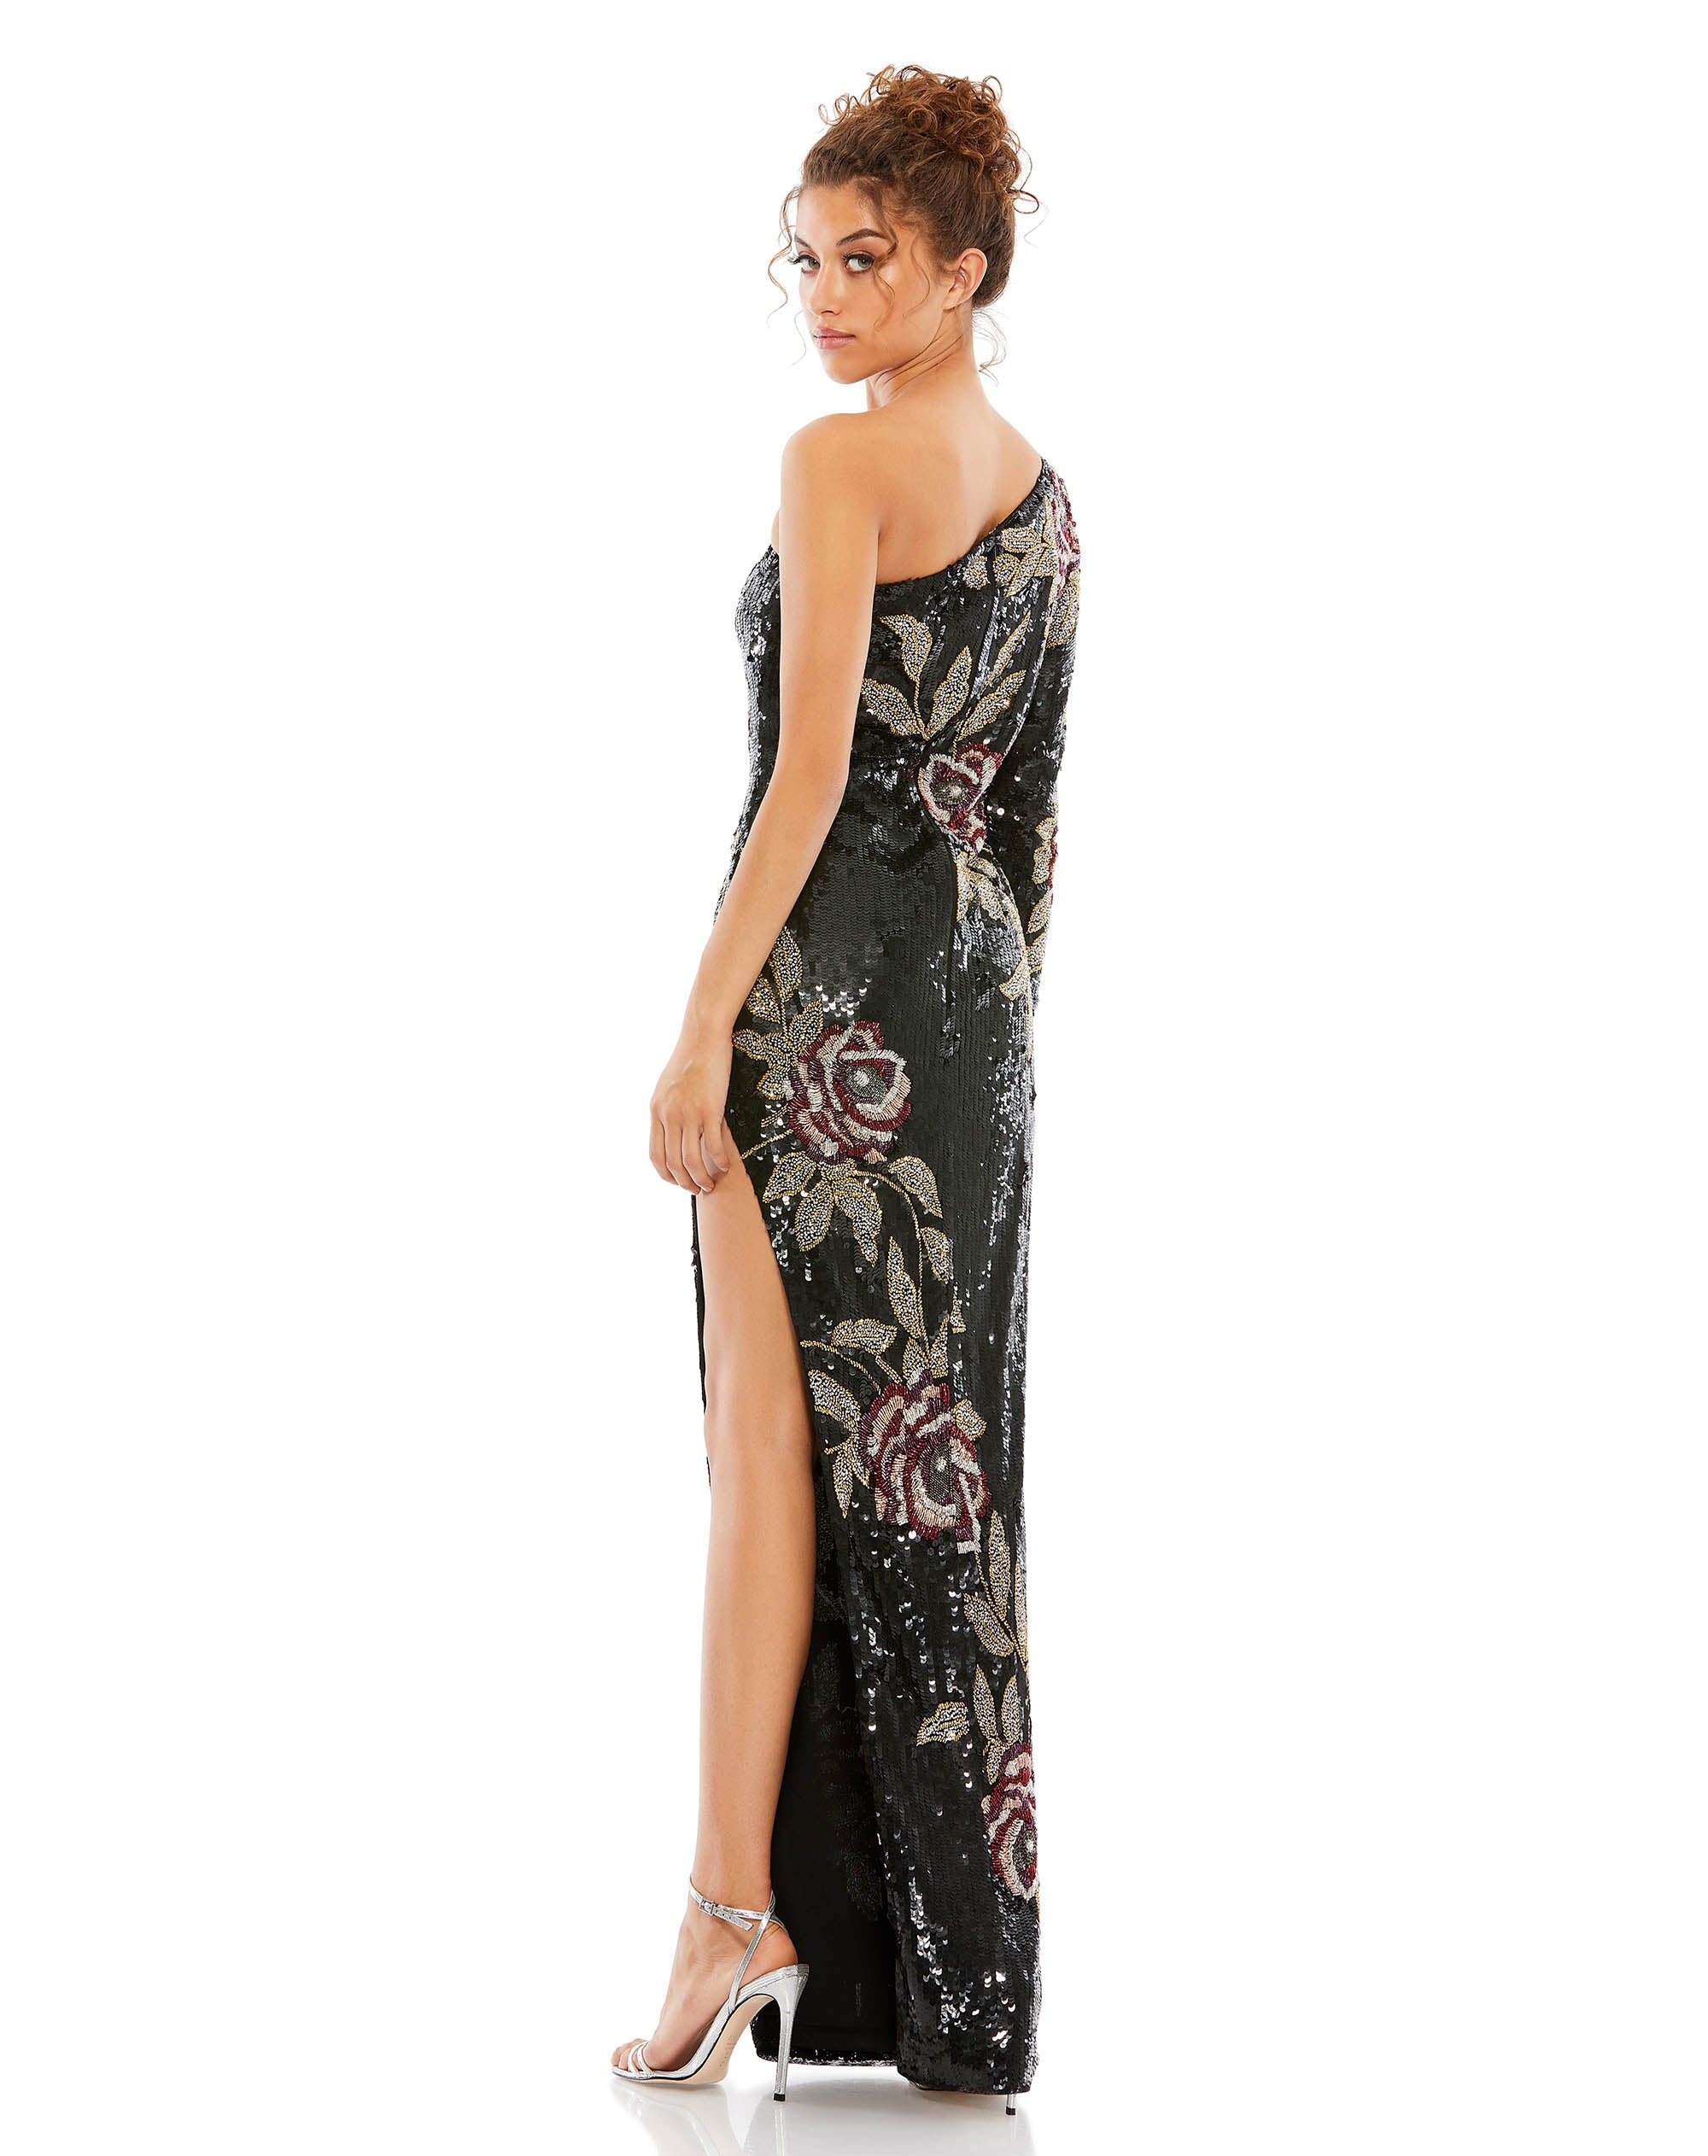 Embellished Asymmetrical Floral One Shoulder Gown | Sample | Sz. 4